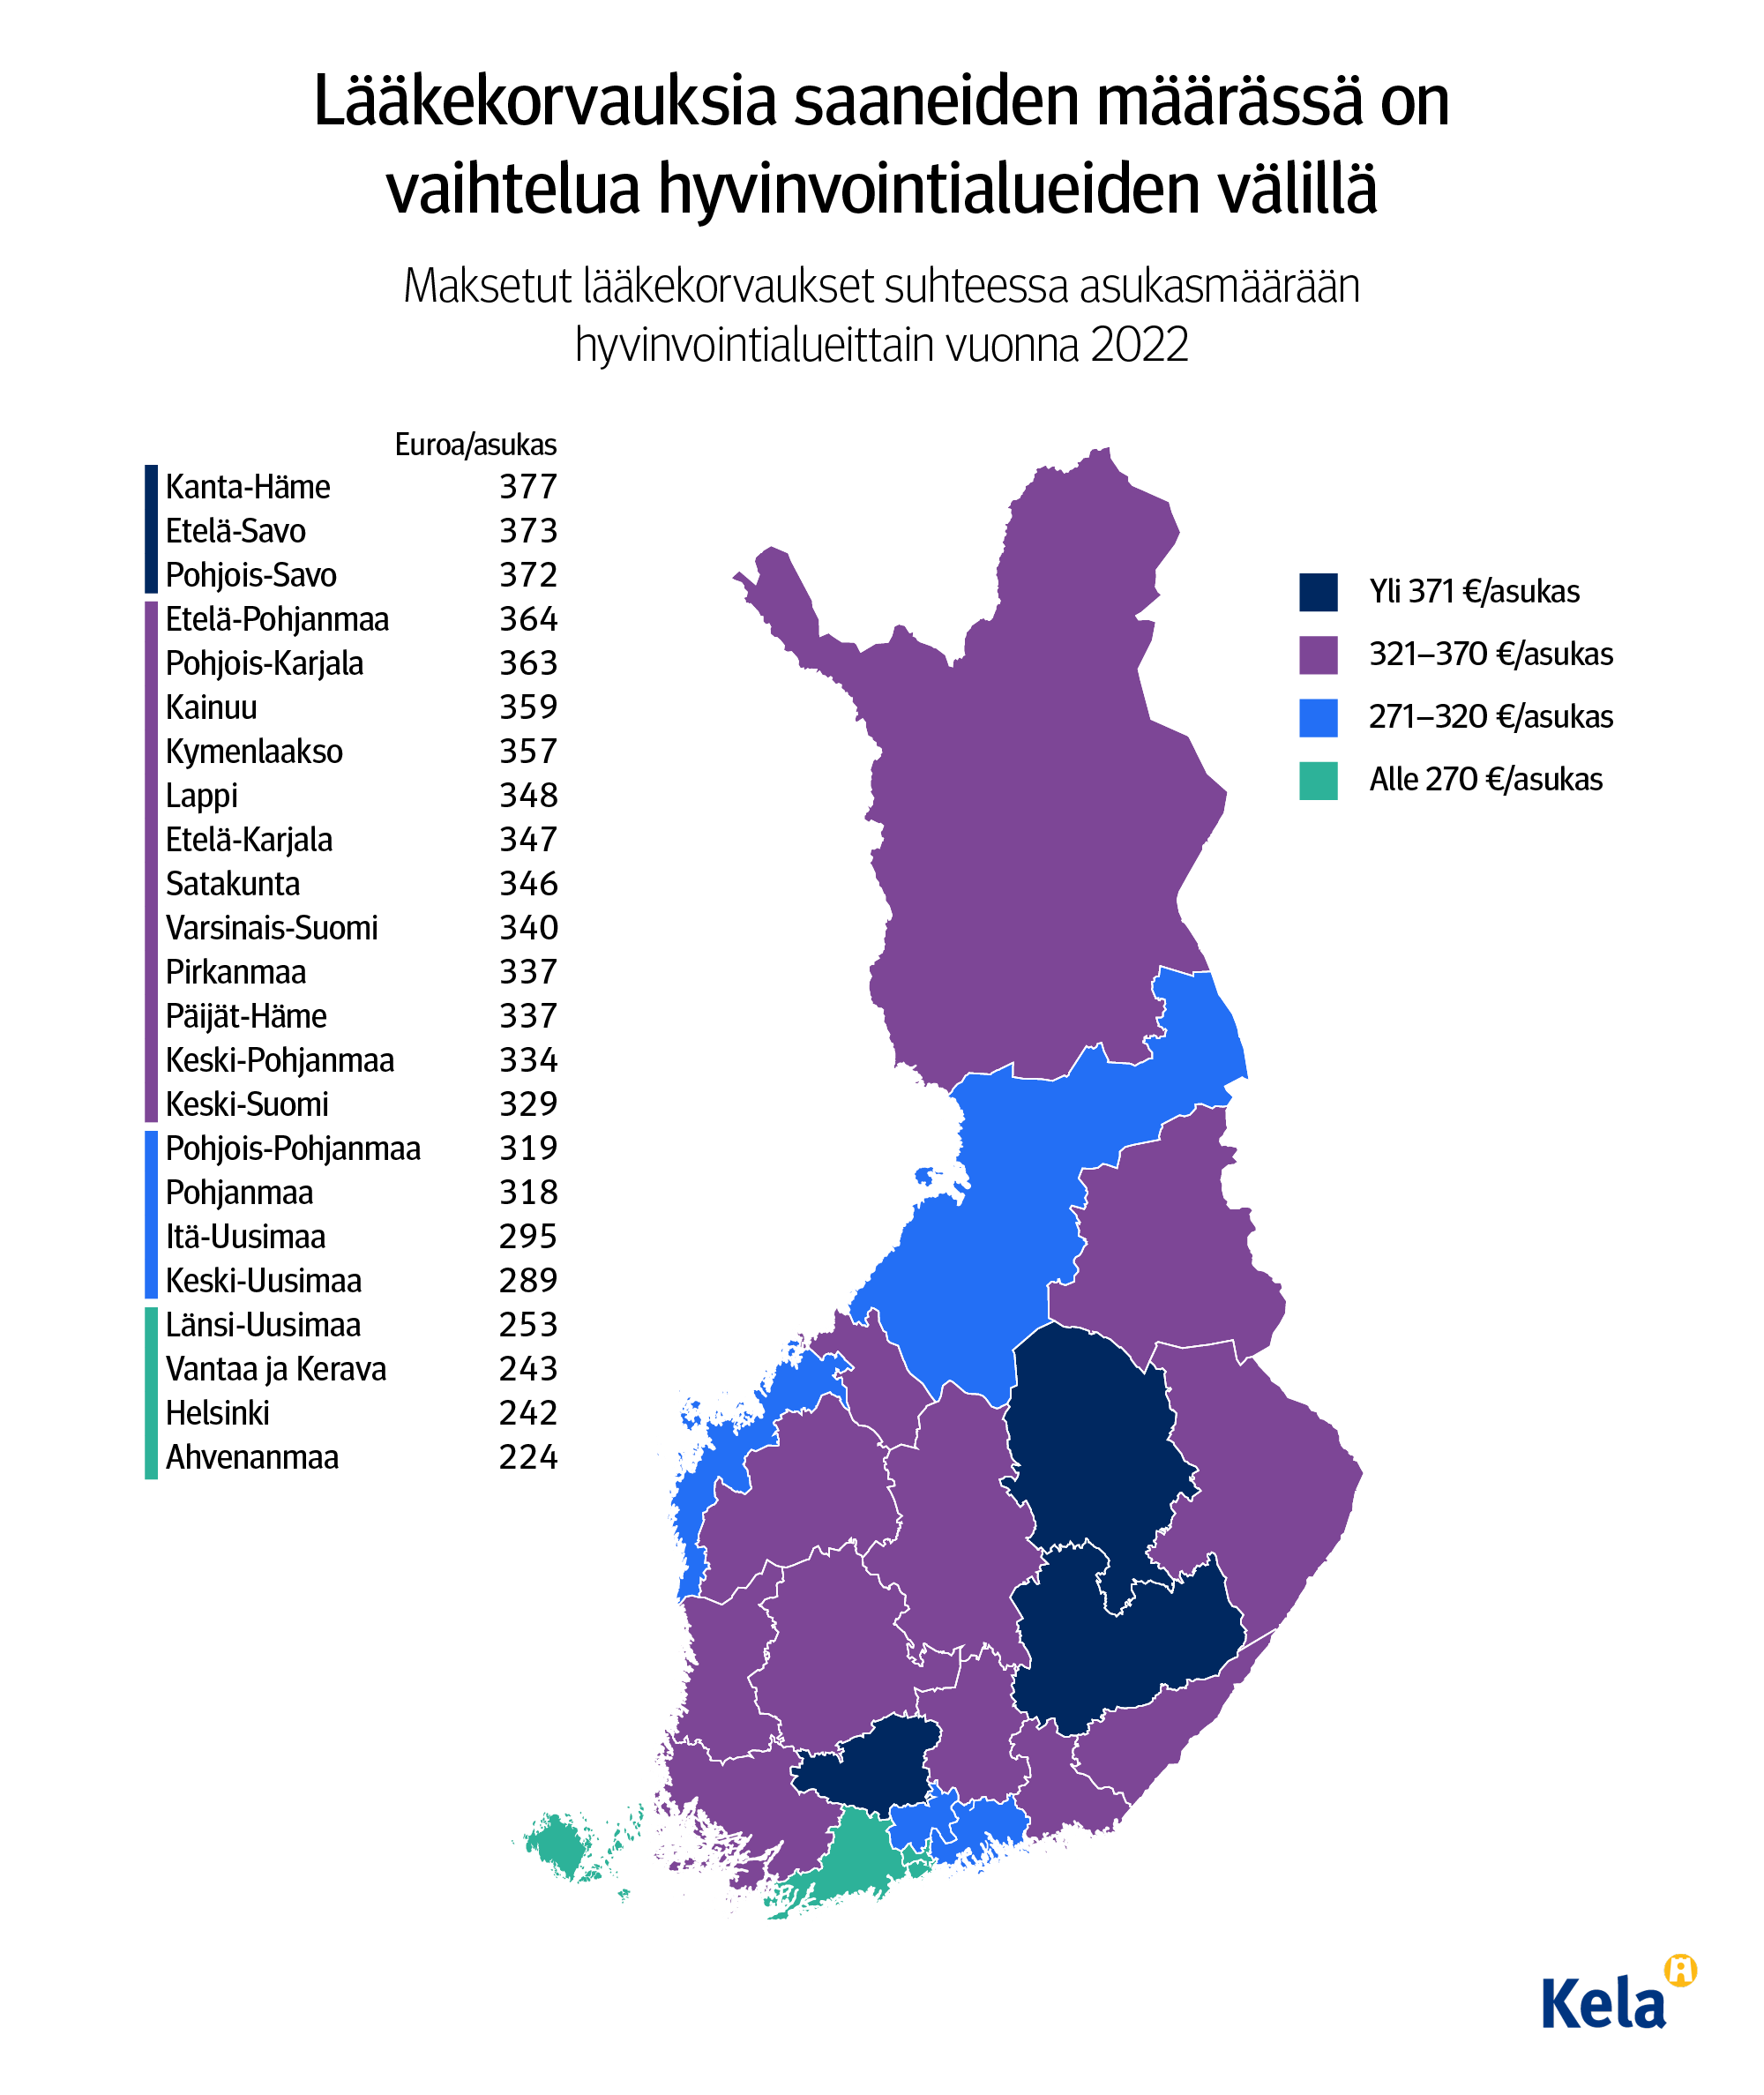 Kuvion otsikko: Lääkekorvauksia saaneiden määrässä on vaihtelua hyvinvointialueiden välillä. Karttakuva näyttää, että eniten korvauksia maksettiin vuonna 2022 Kanta-Hämeen sekä Etelä- ja Pohjois-Savon hyvinvointialueille, vähinten Ahvenanmaalle ja Helsinkiin.